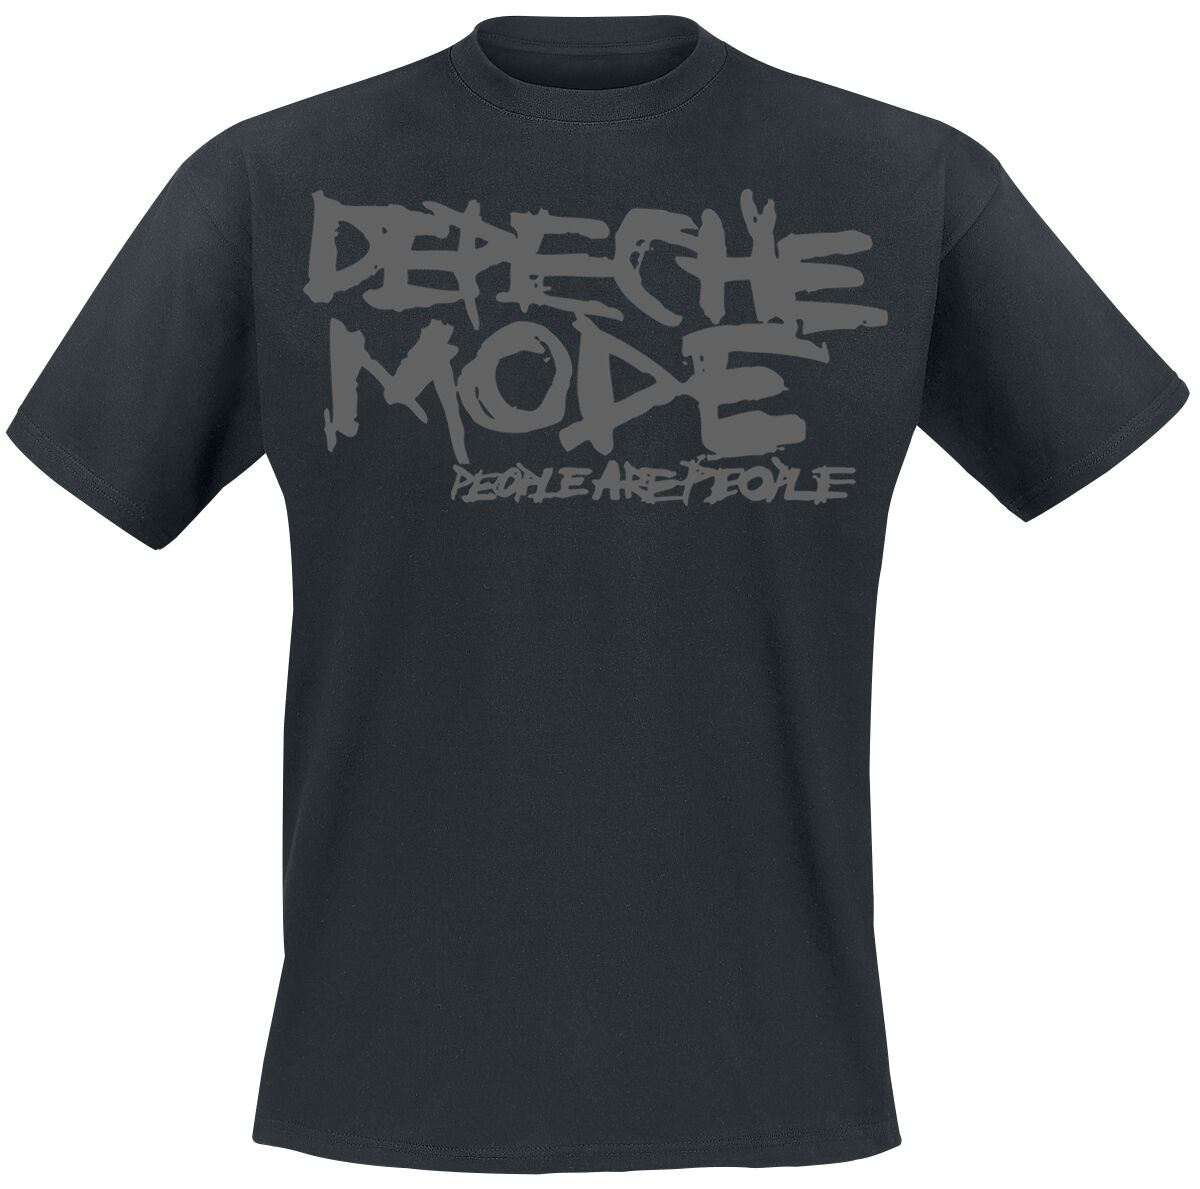 Depeche Mode T-Shirt - People Are People - S bis XXL - für Männer - Größe XXL - schwarz  - Lizenziertes Merchandise!